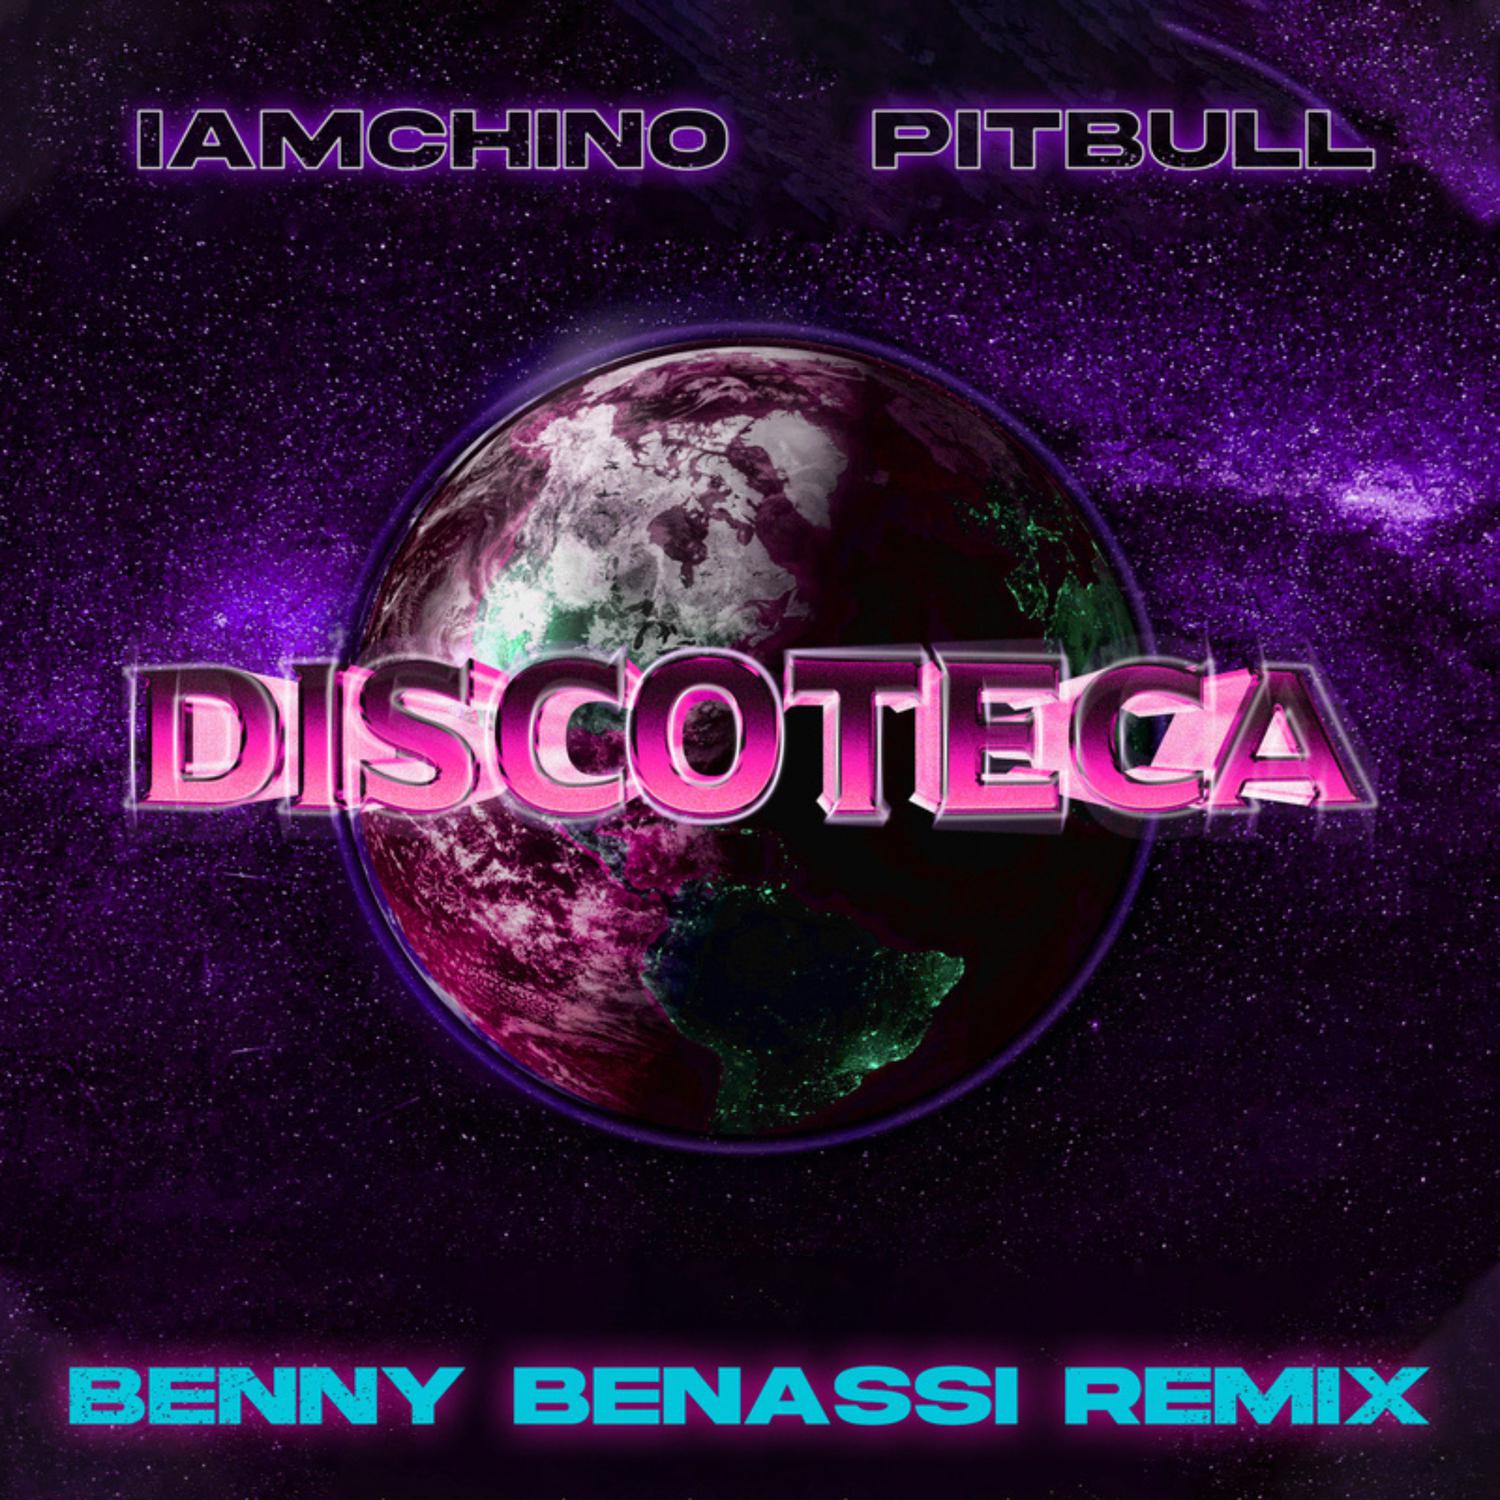 IAmChino - Discoteca (Benny Benassi Remix)